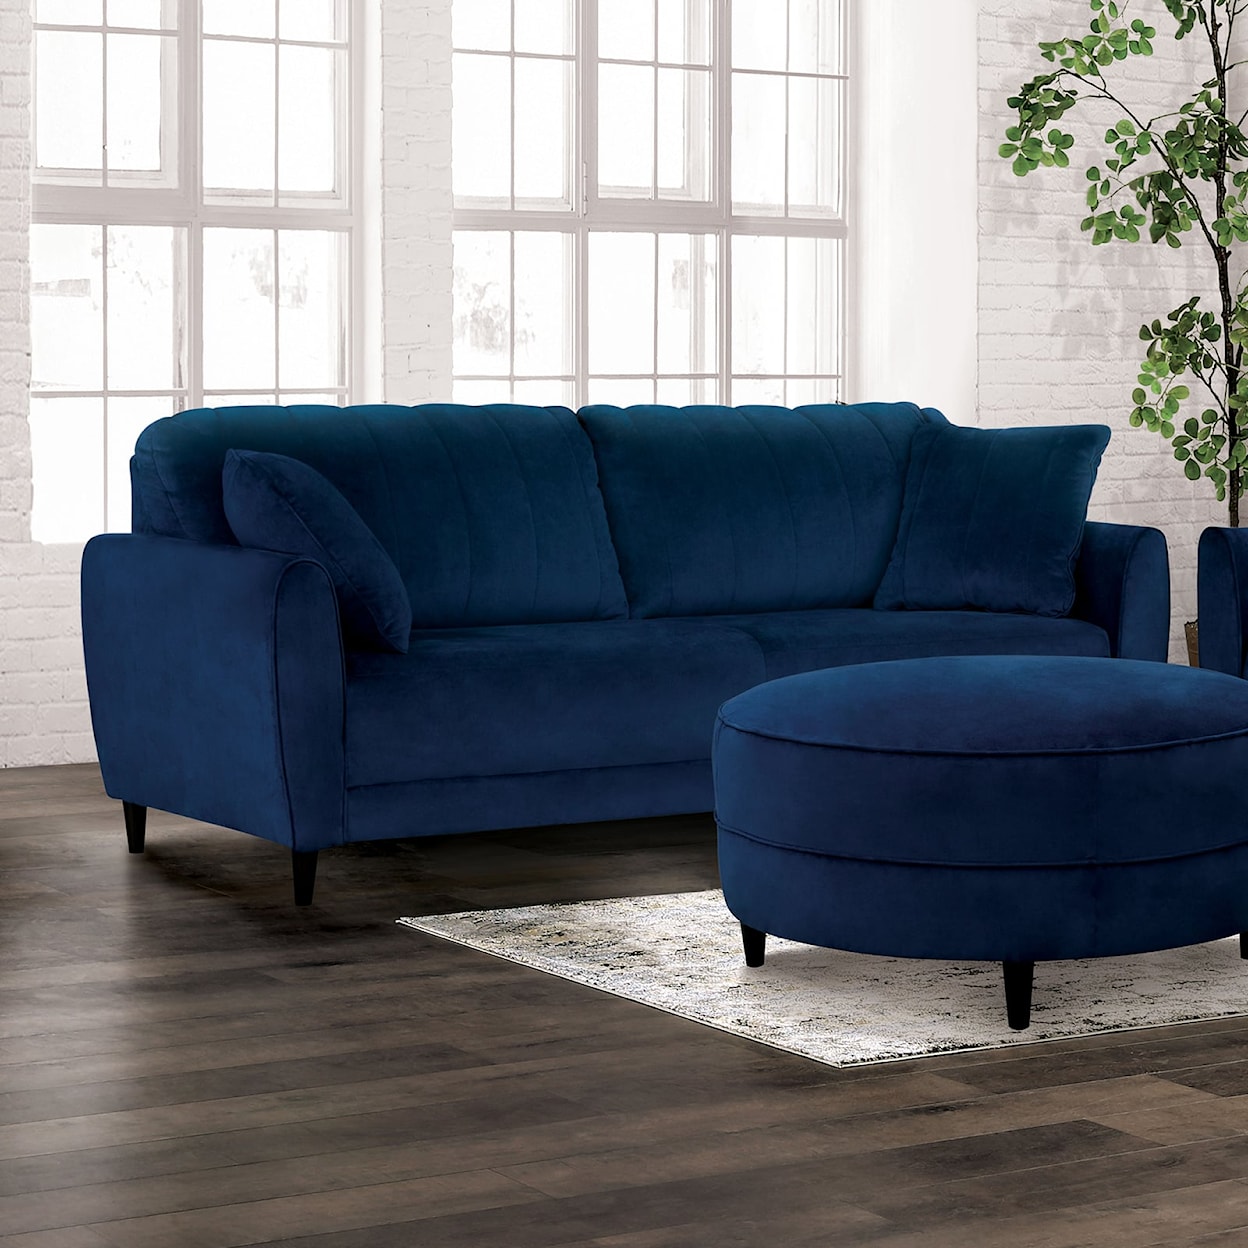 Furniture of America KEDIRI Sofa